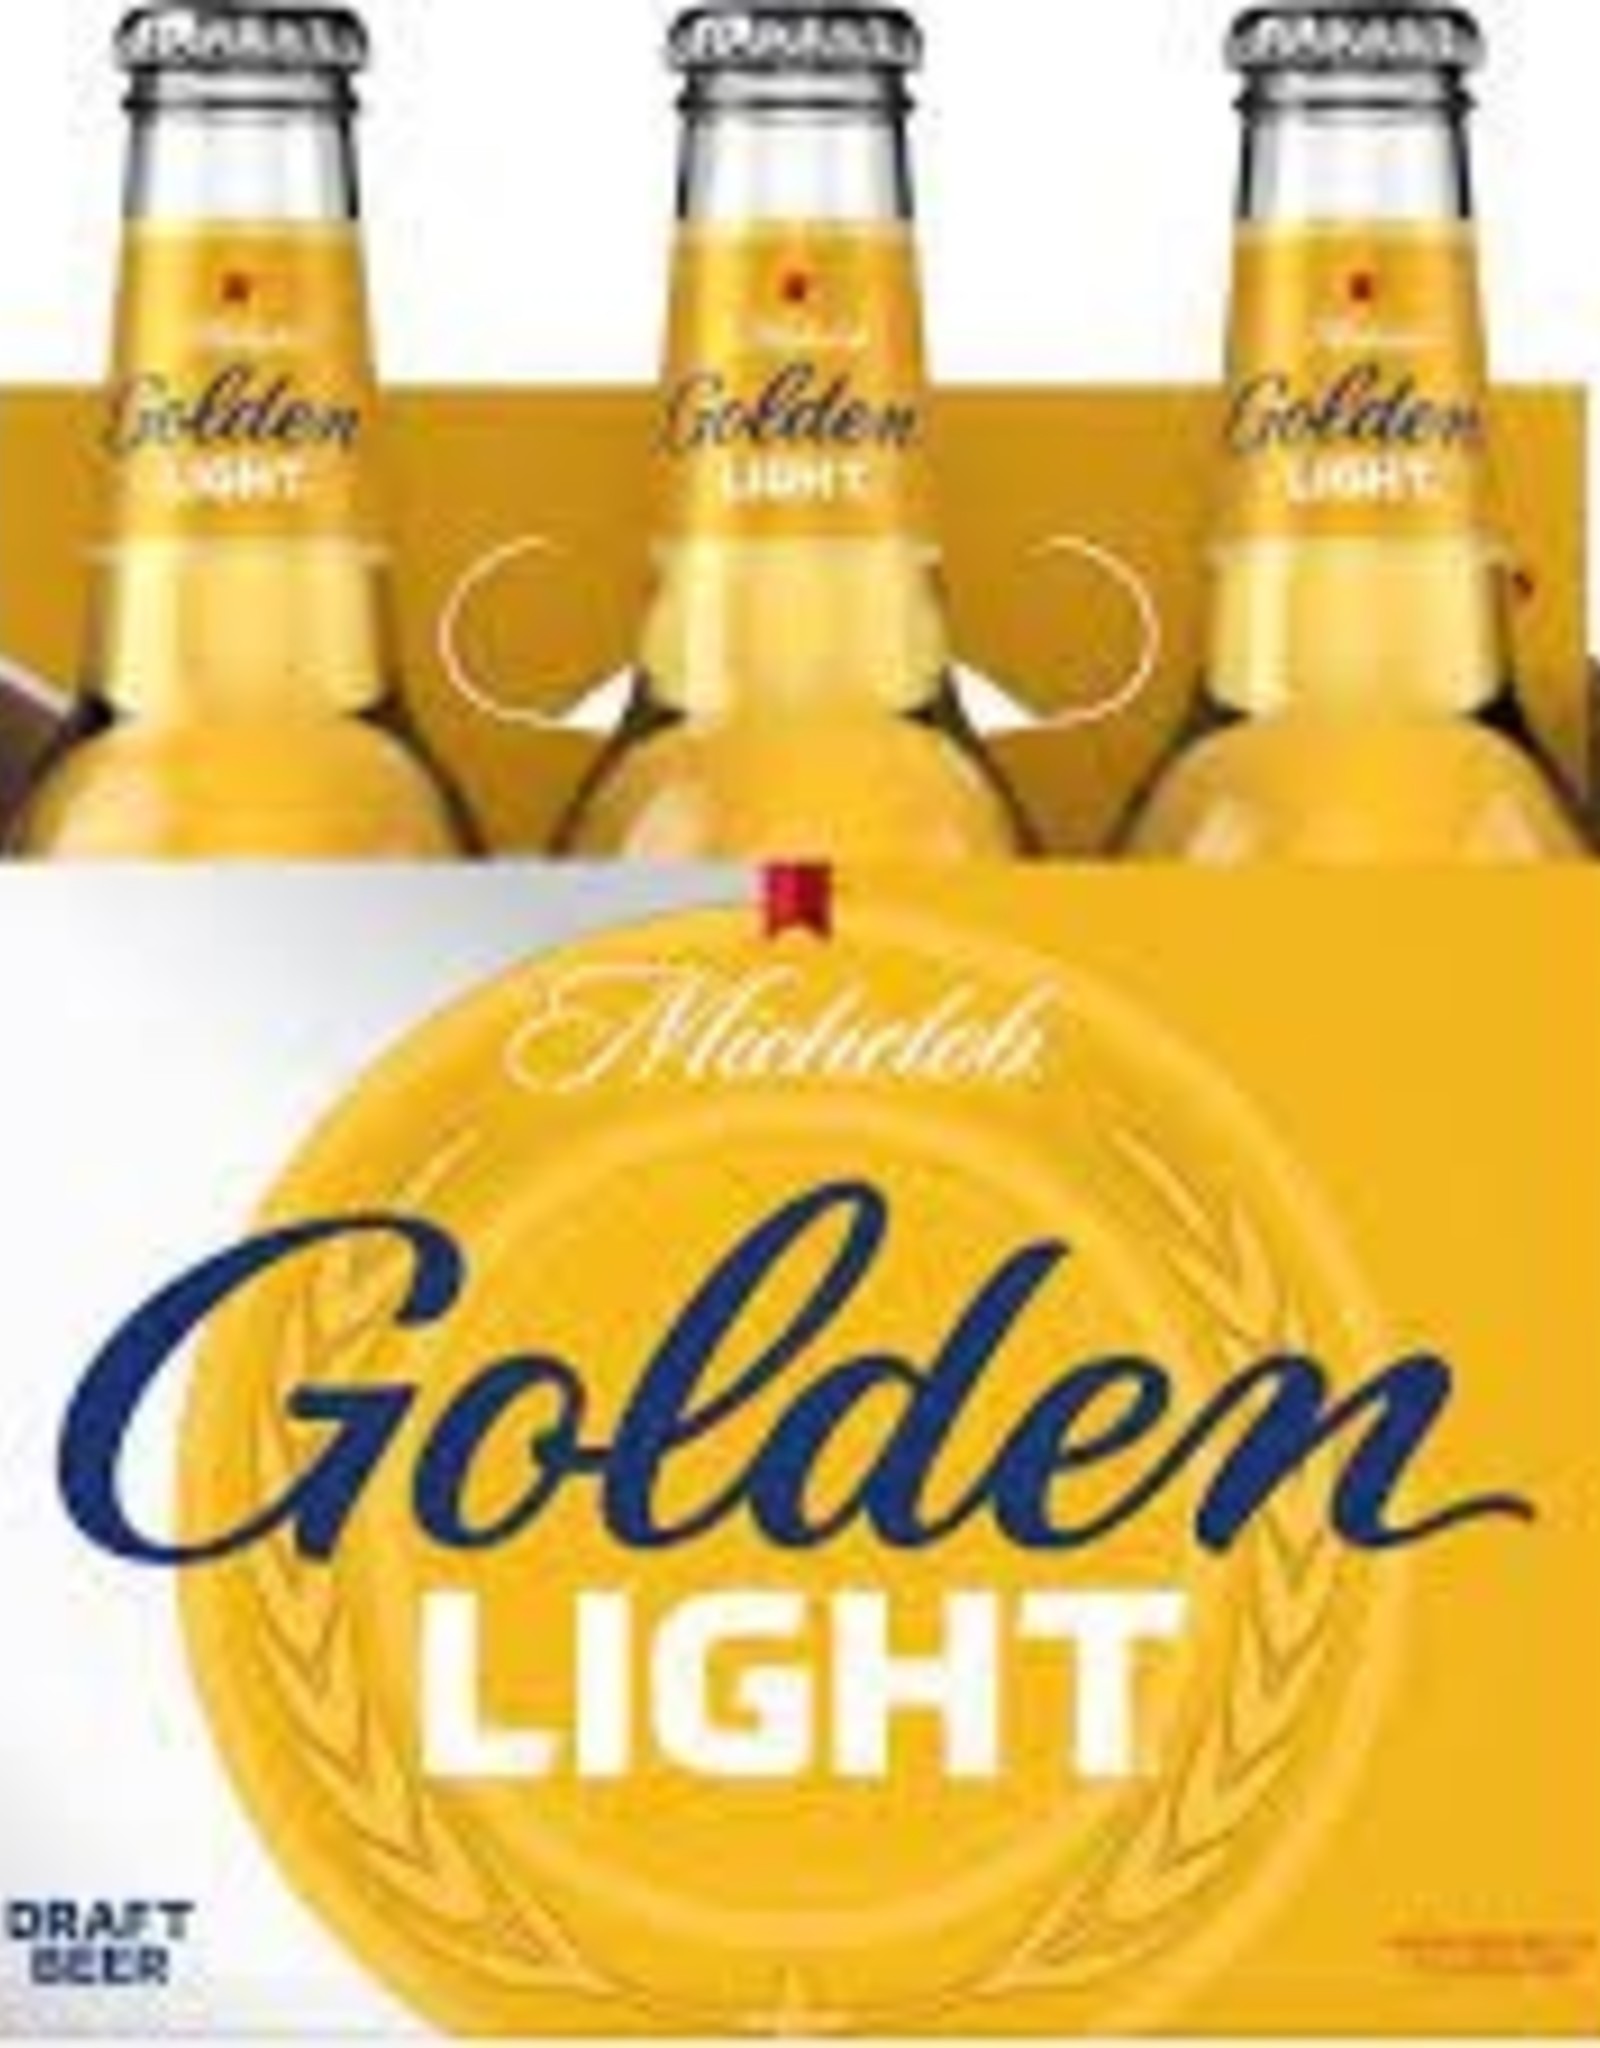 Michelob Golden Light 6x12 oz bottles